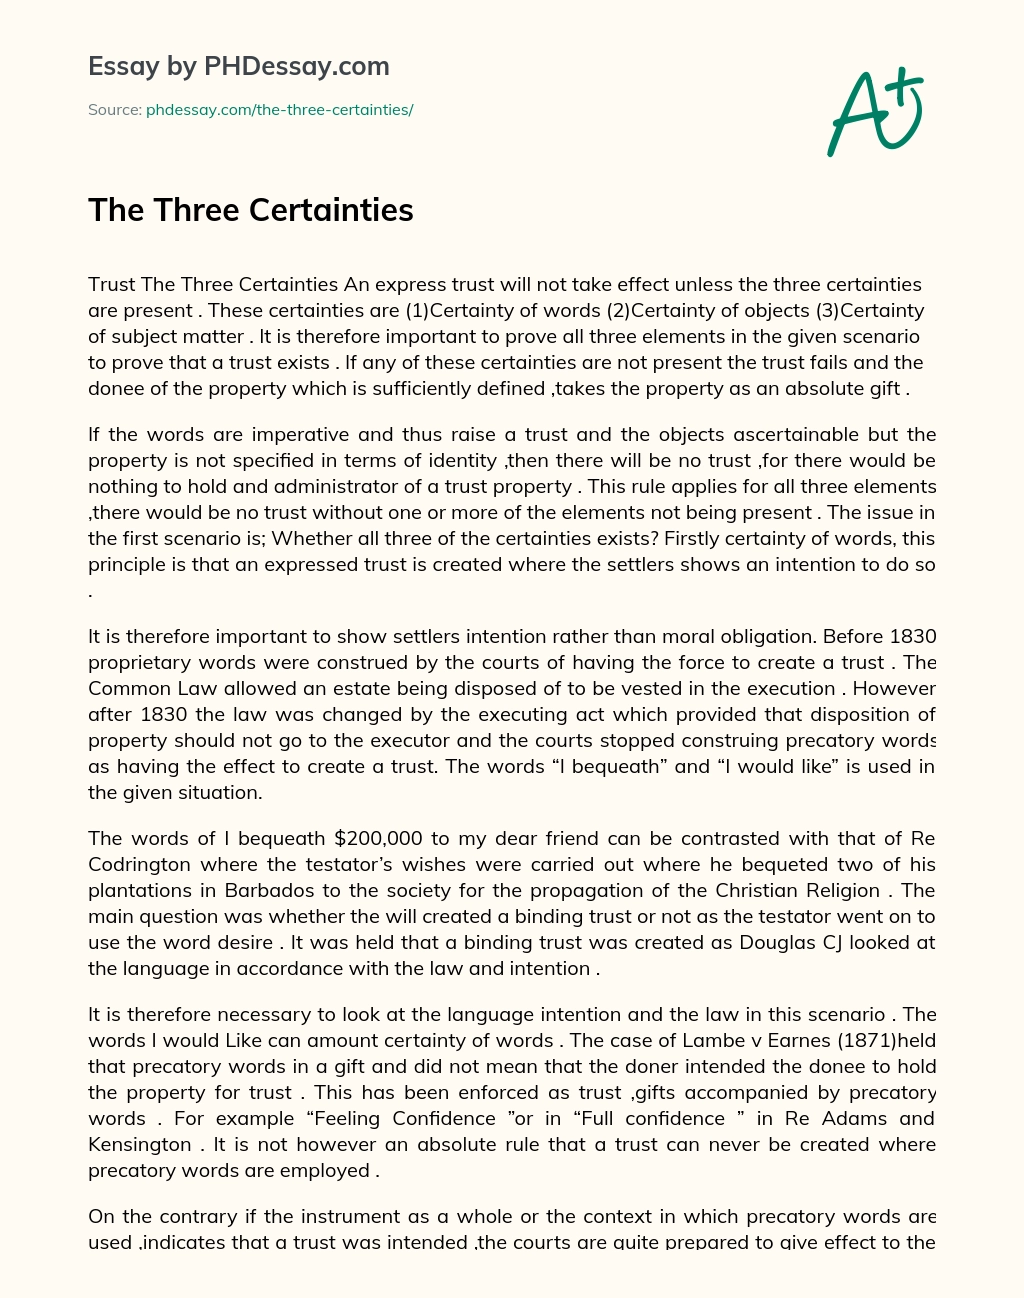 The Three Certainties essay